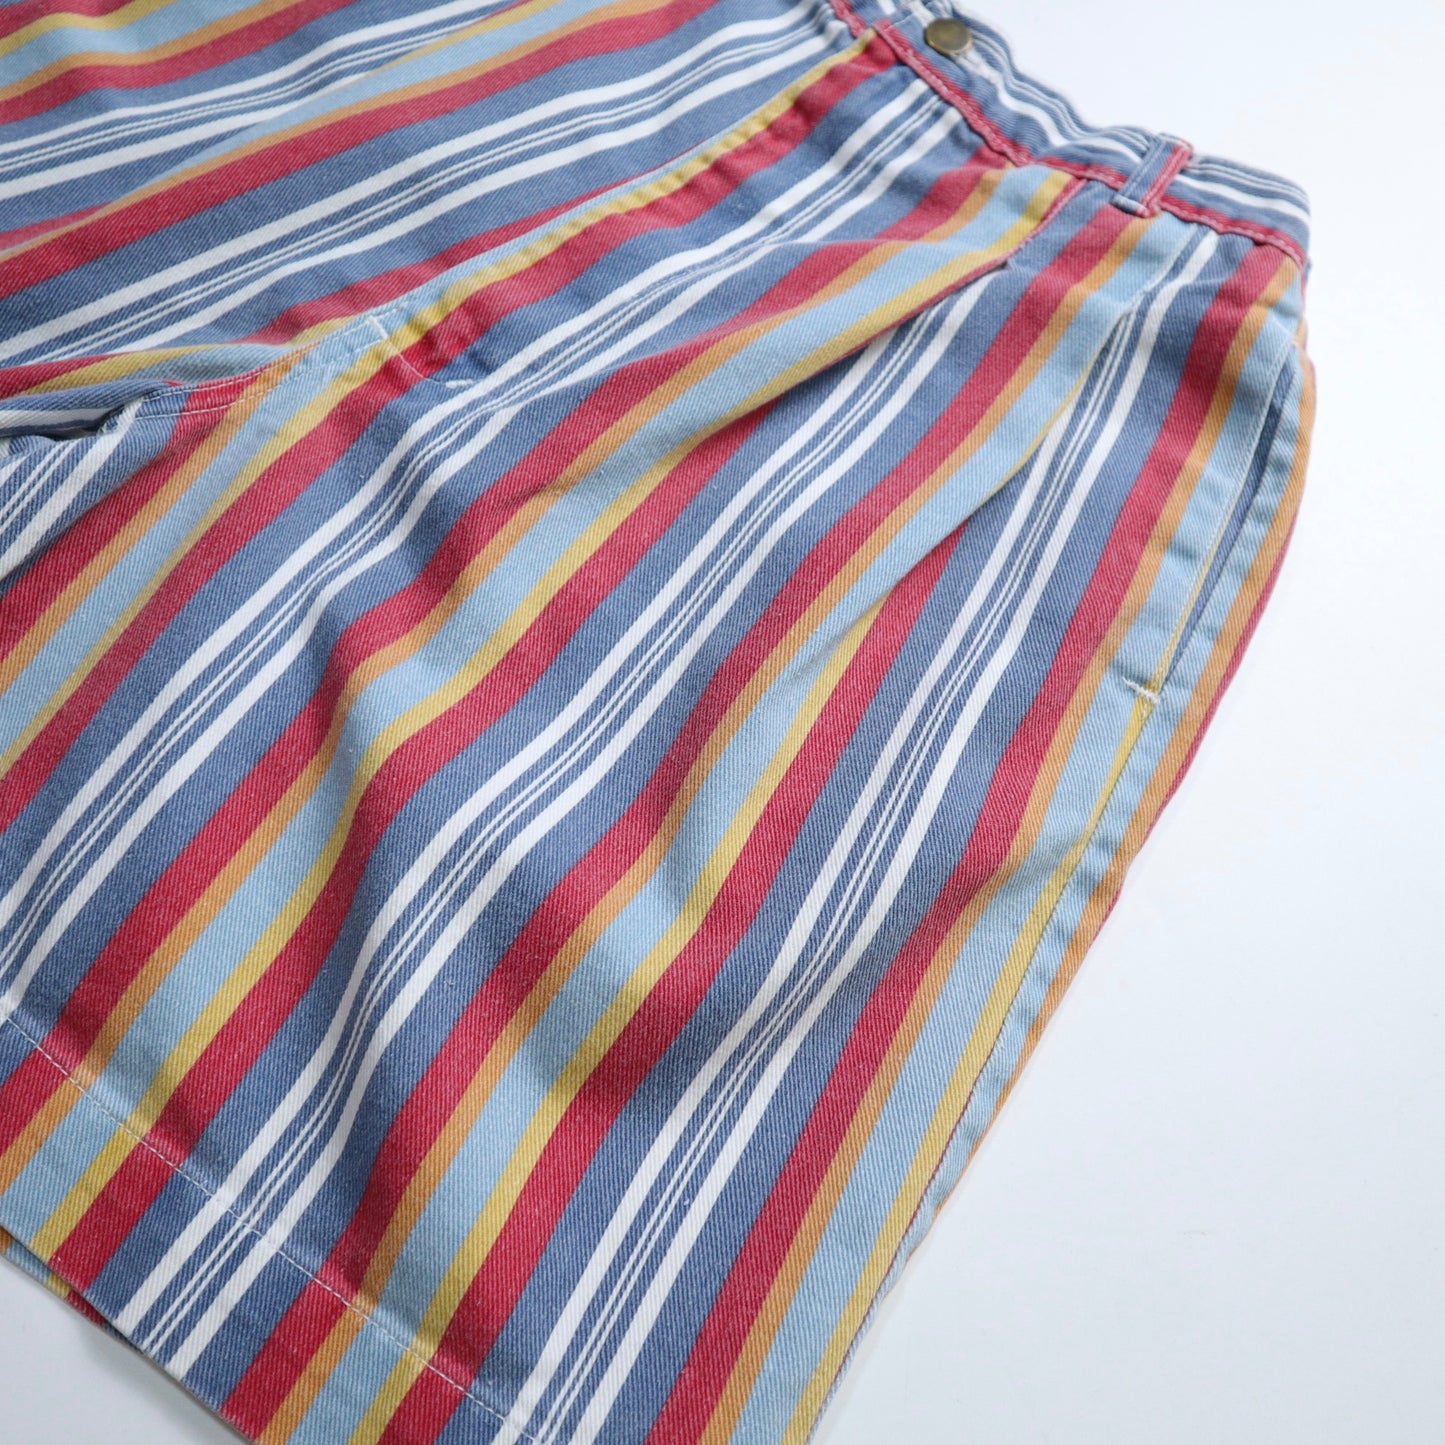 （25W)80s 美國製 彩色條紋斜紋純棉短褲 talon42拉鍊